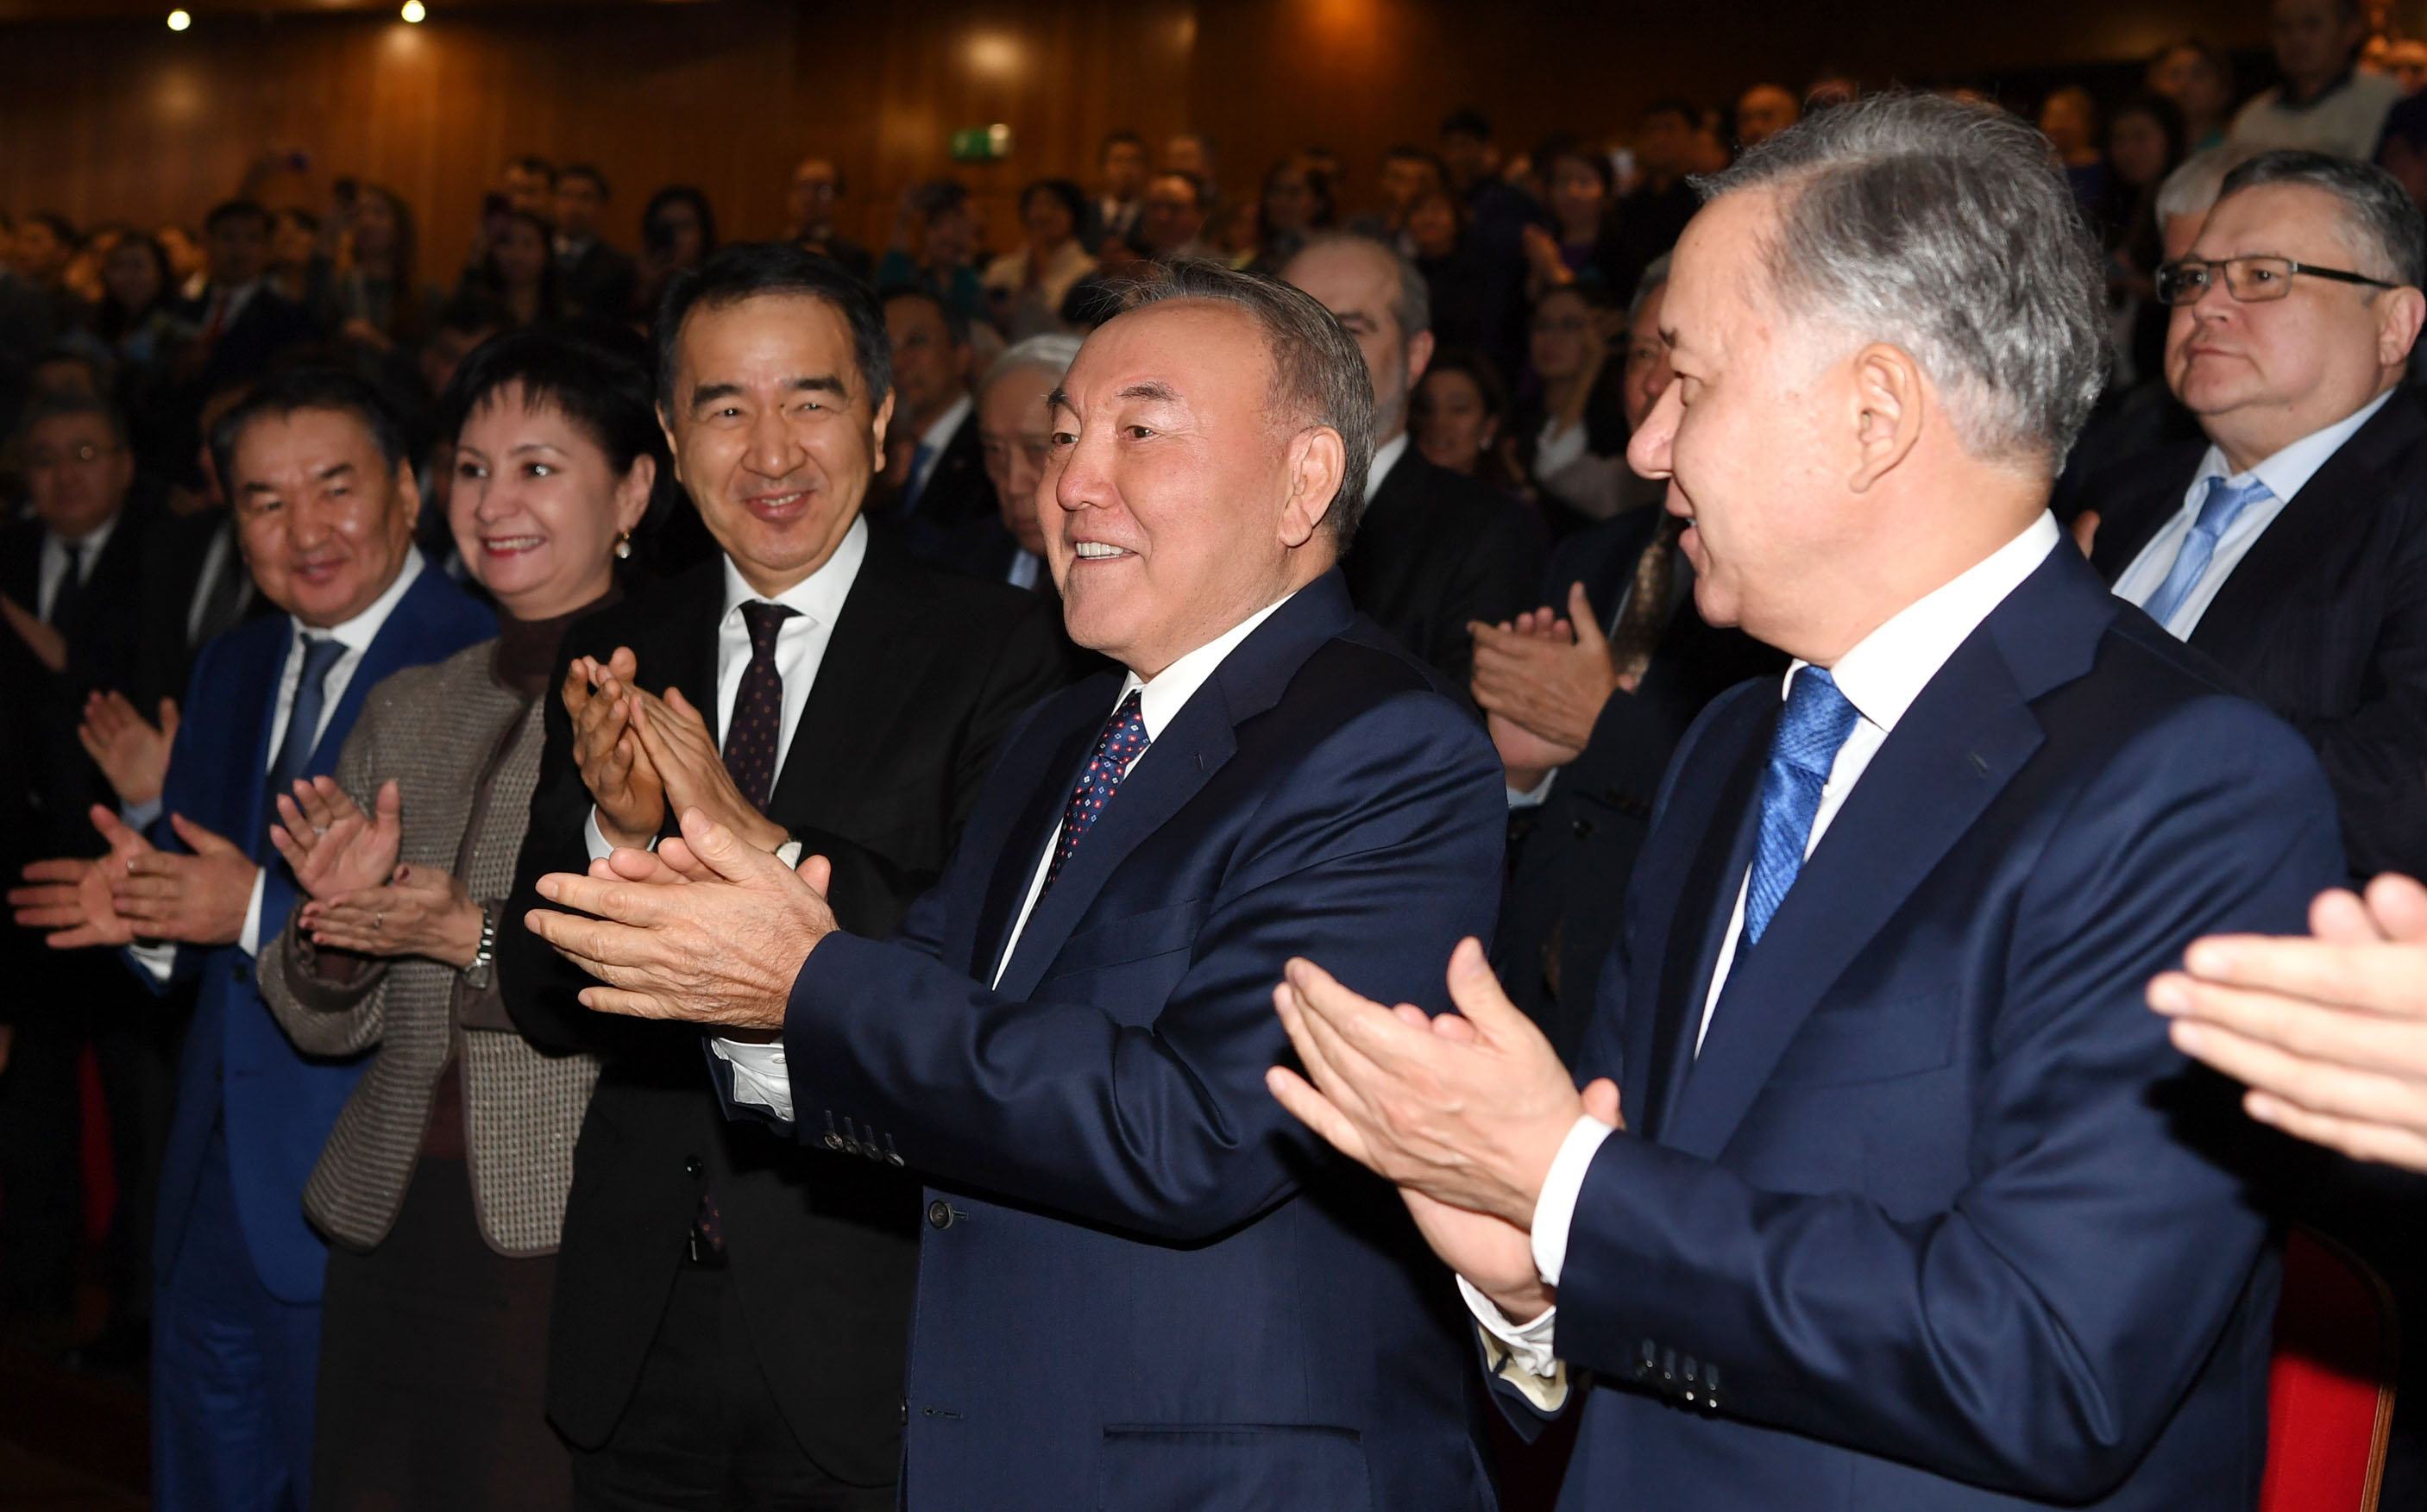 Нурсултан Назарбаев посетил премьеру фильма «Путь лидера. Астана»